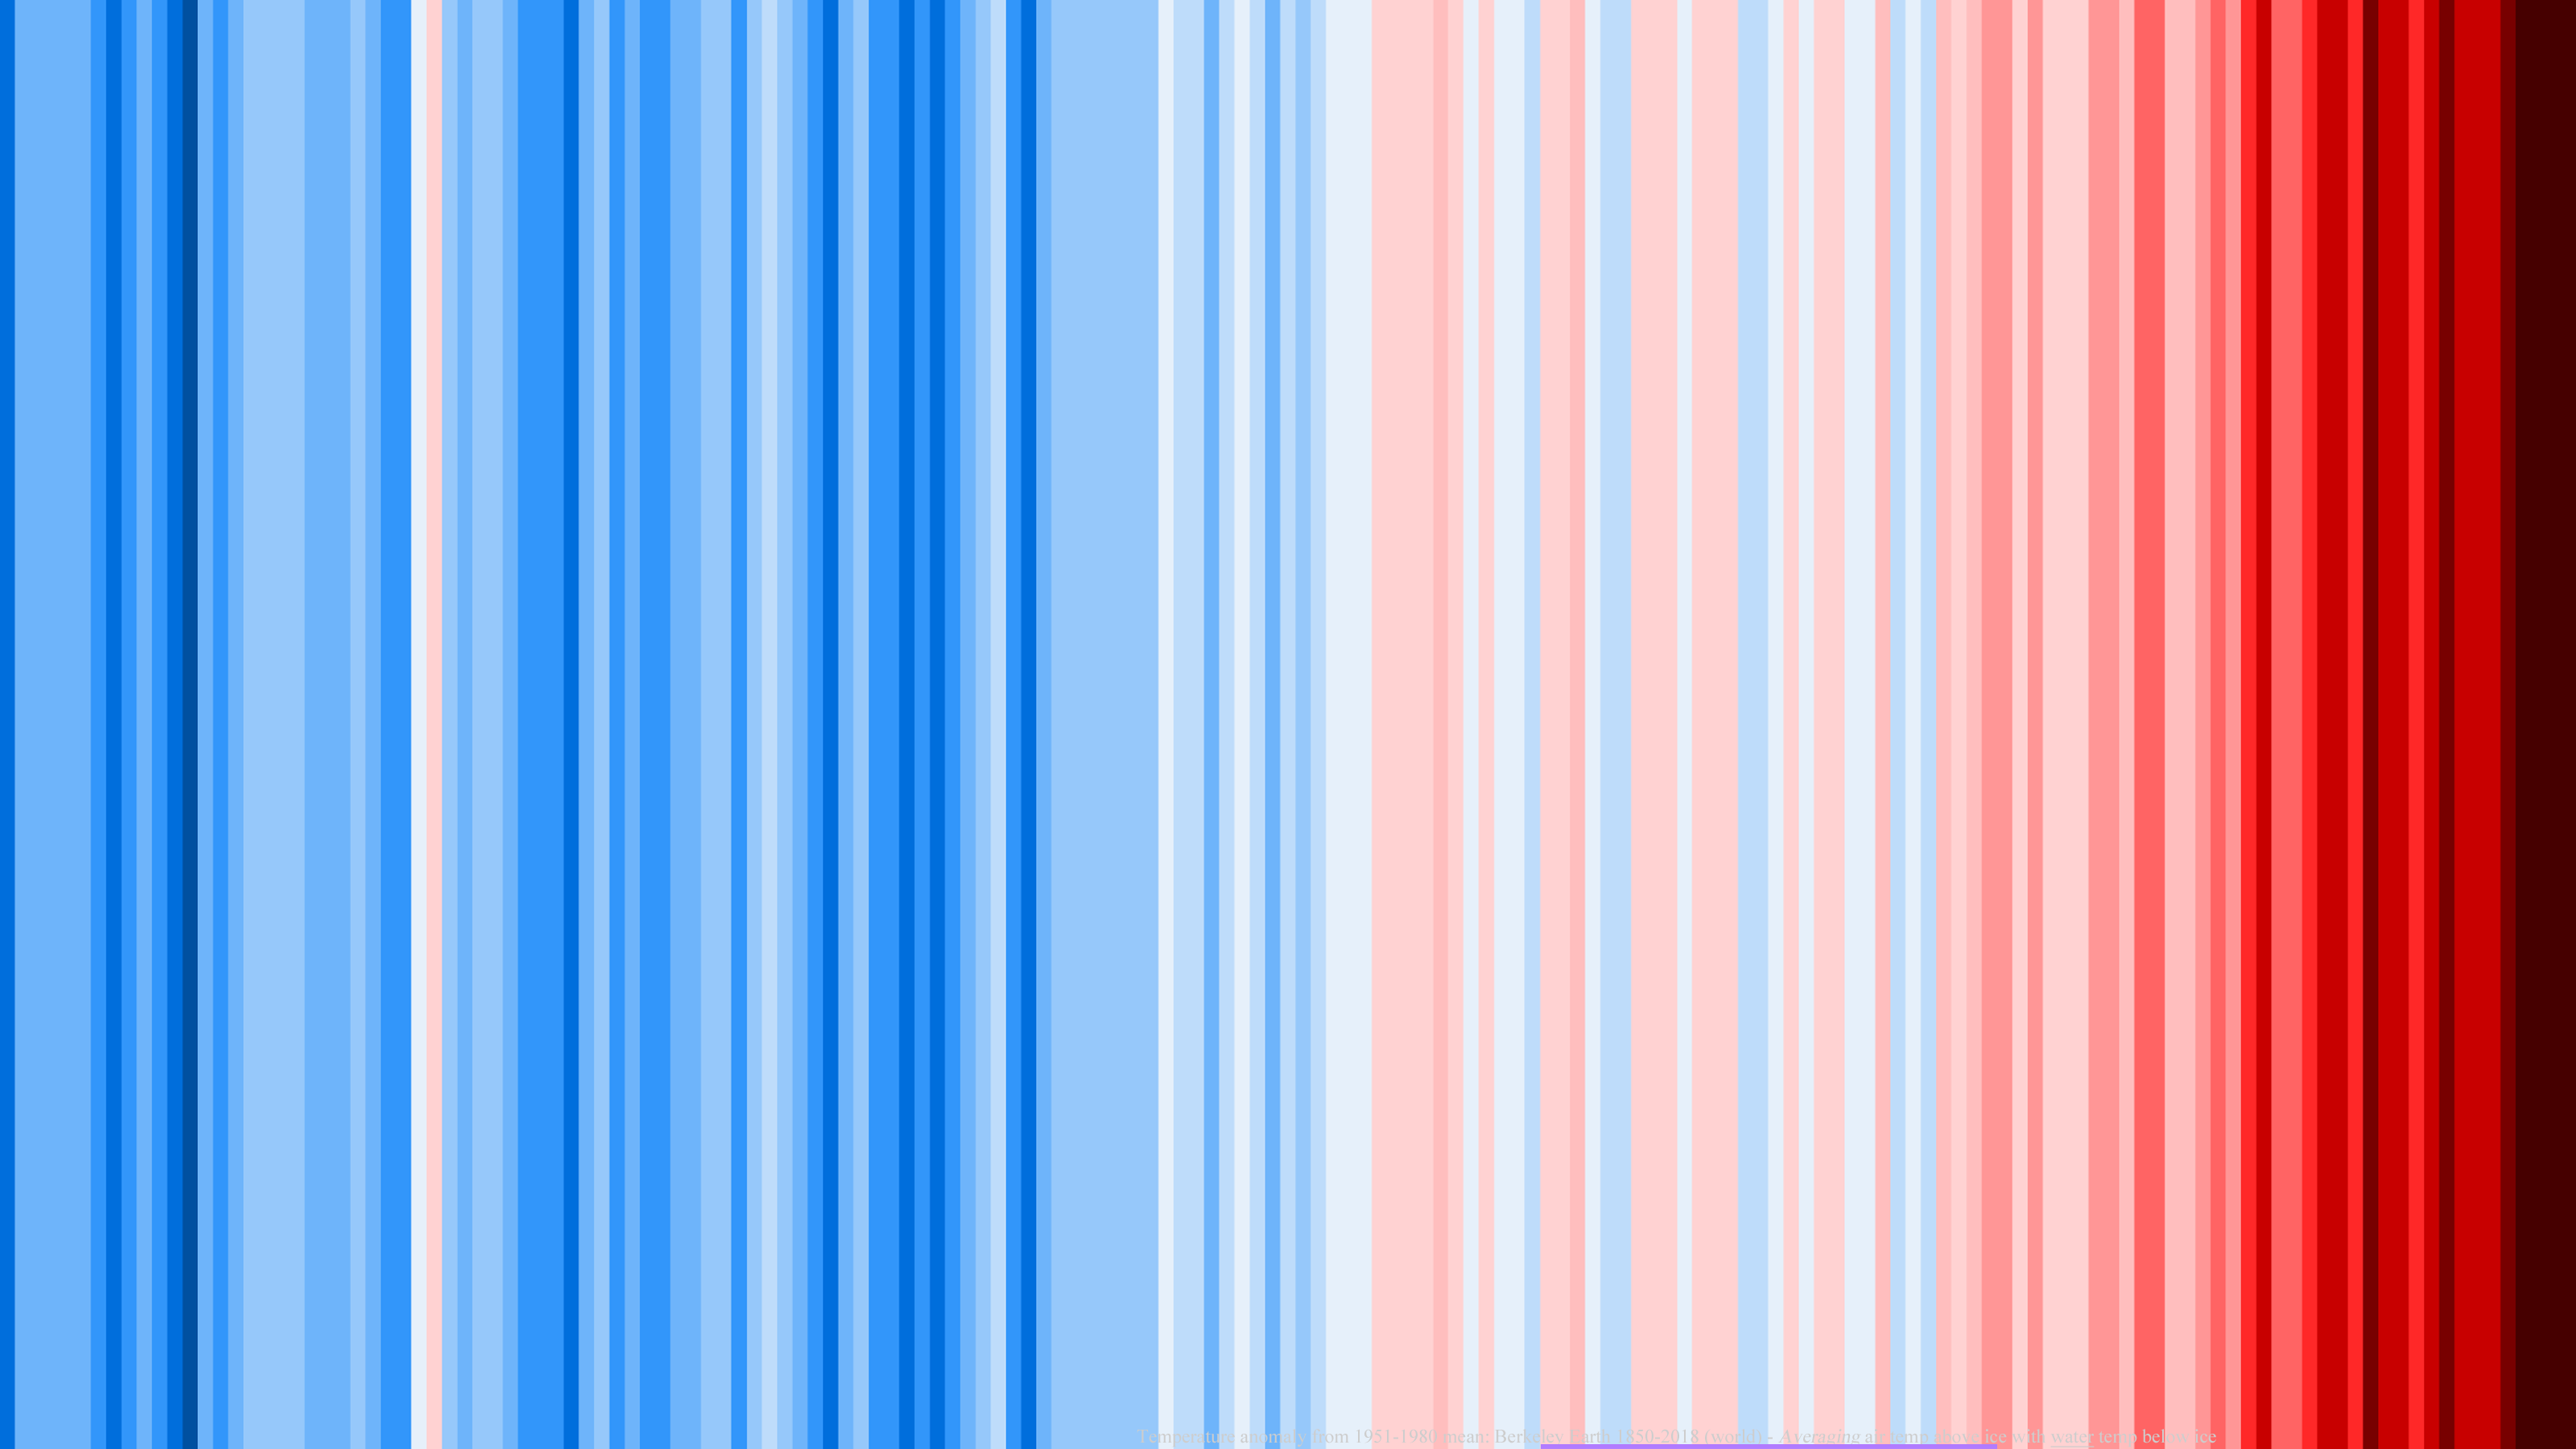 Blå och röda ränder av olika valör som illustrerar temperaturskillnad.